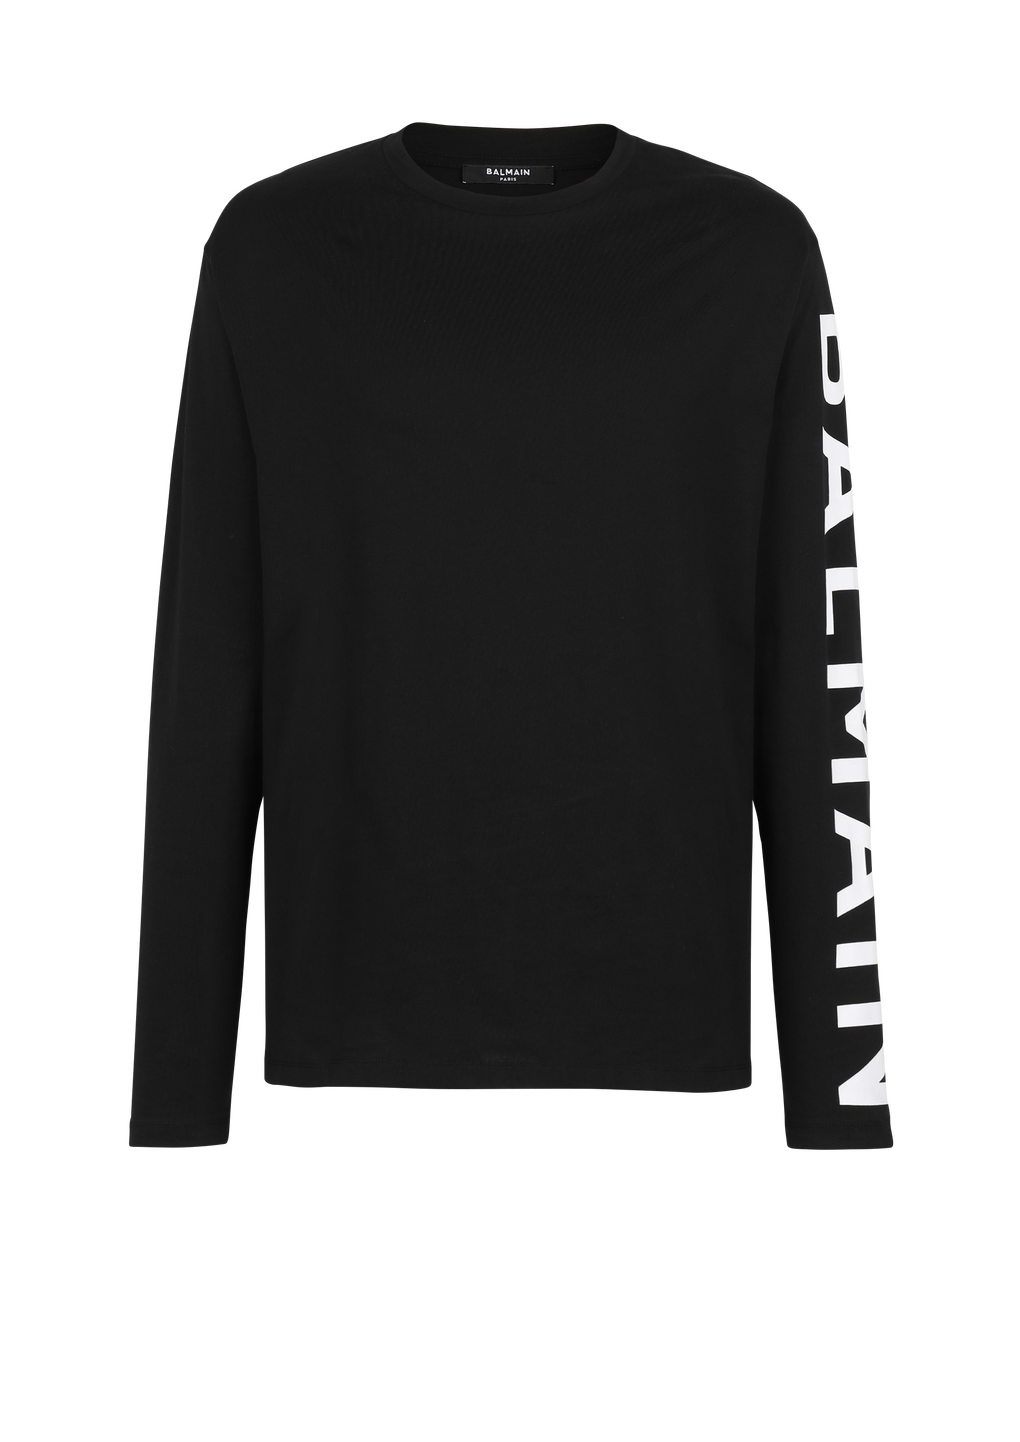 Langärmliges T-Shirt aus Baumwolle mit Balmain-Logo am Ärmel, schwarz, hi-res